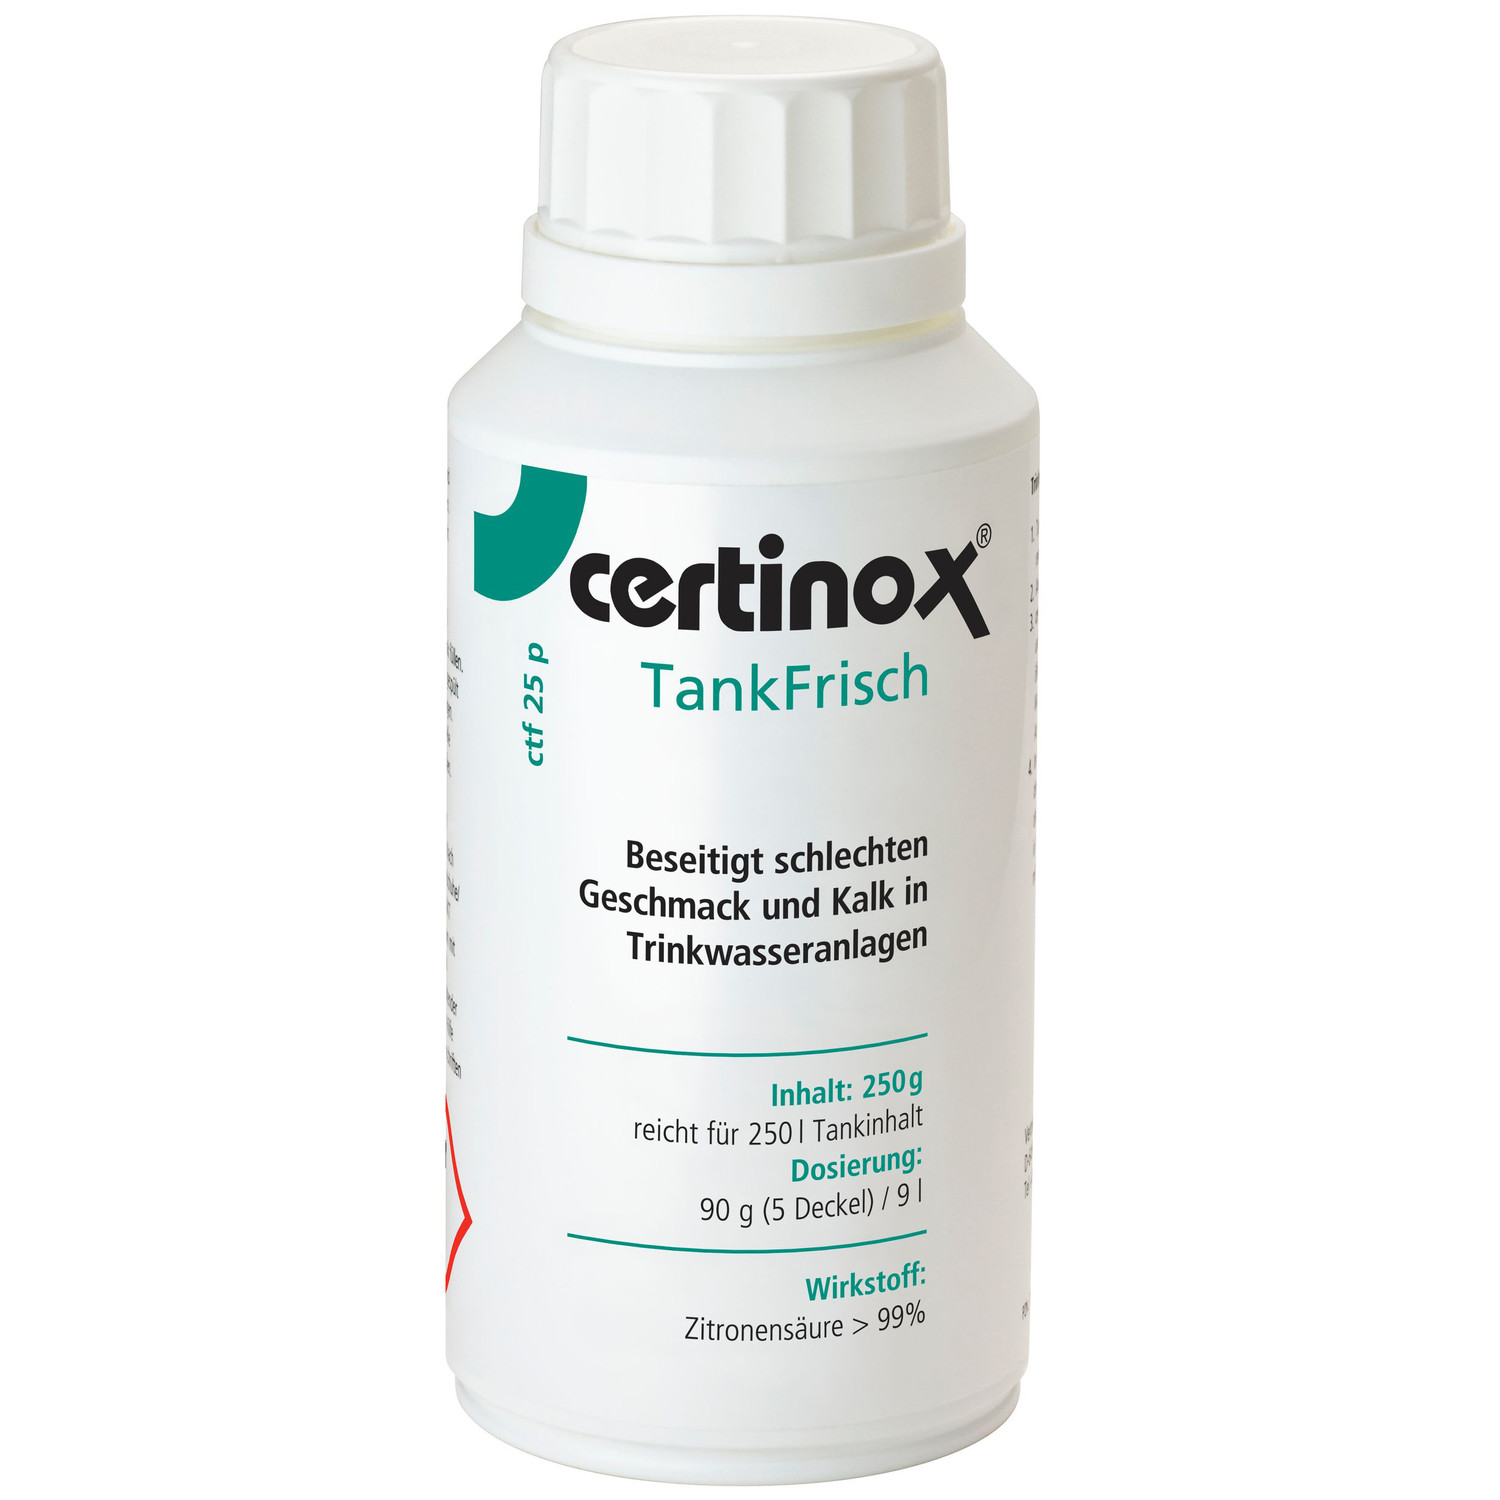 Certinox TankFrisch ctf 25 P beseitigt schlechten Geschmack und Kalk in Trinkwasseranlagen